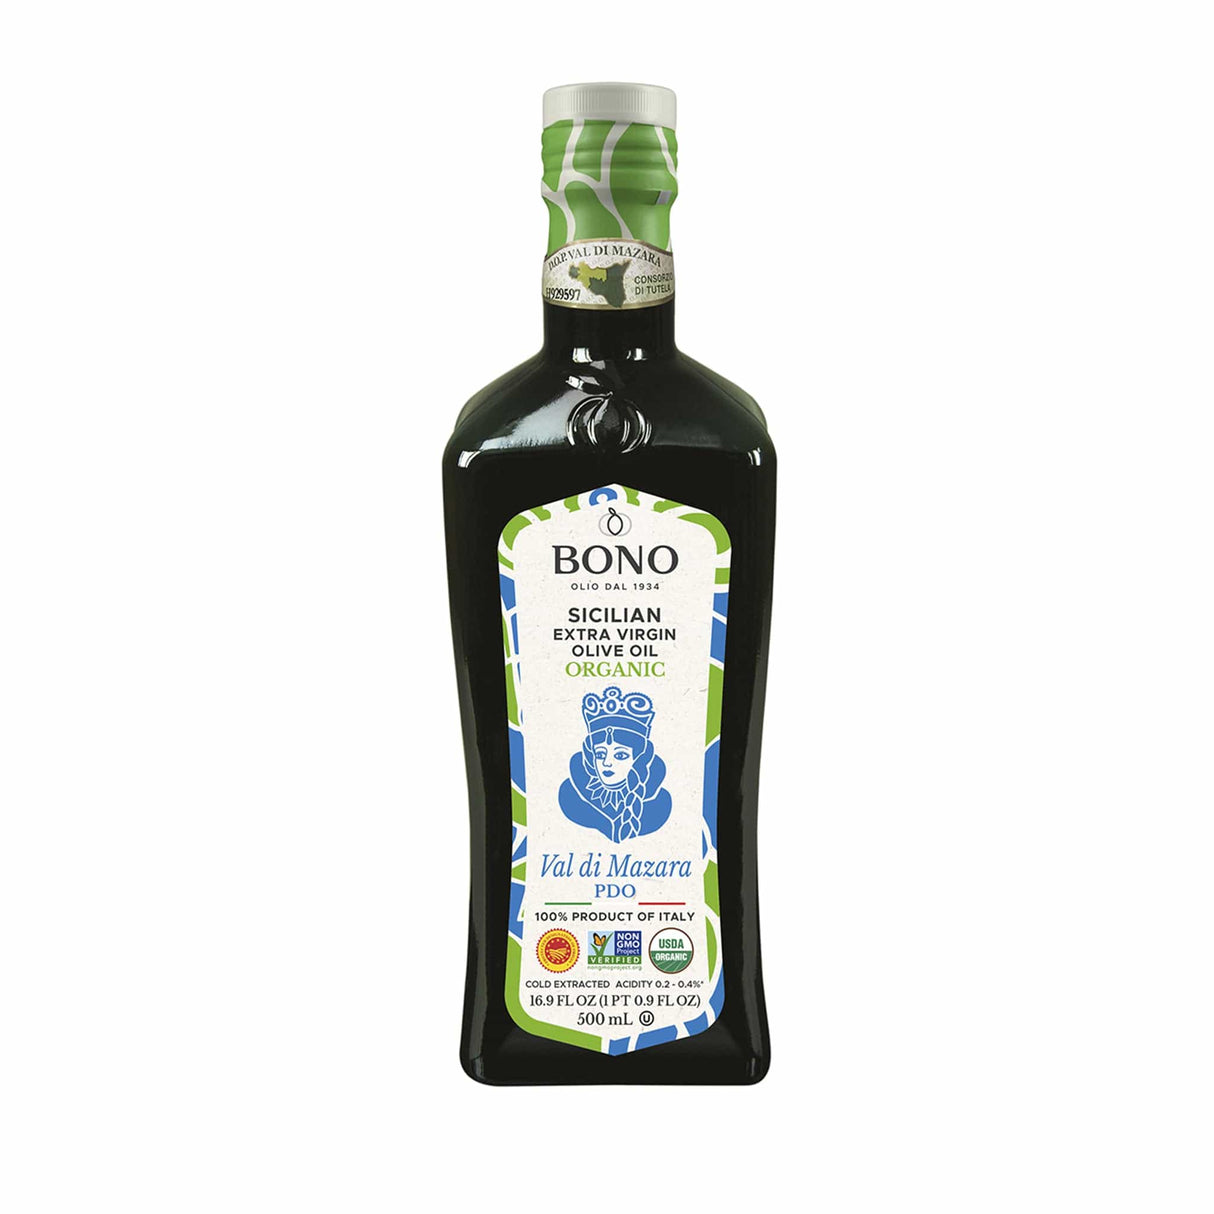 BONO Sicilian Val Di Mazara PDO Organic Extra Virgin Olive Oil